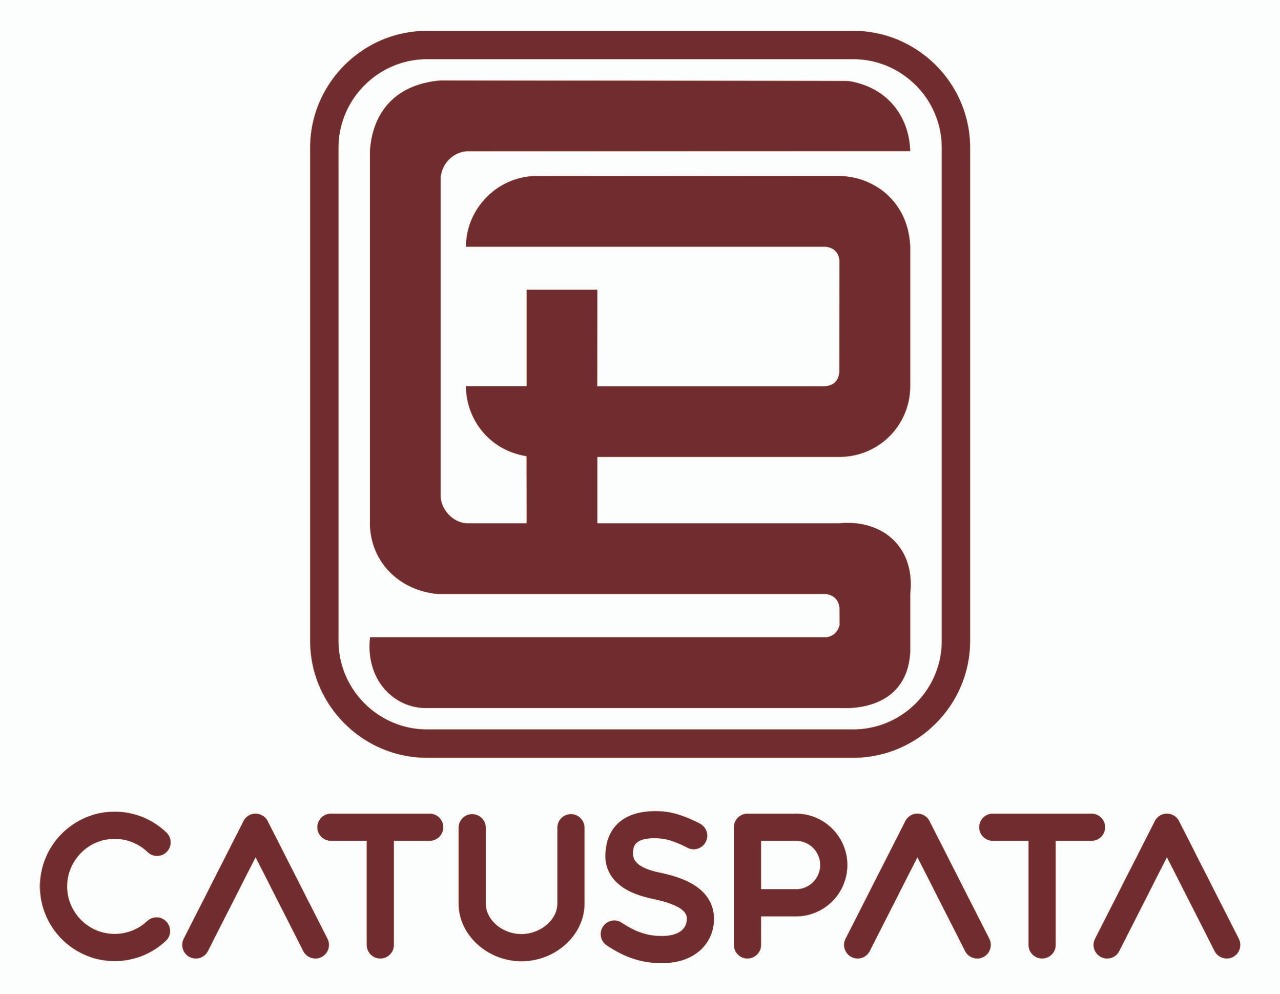 Catuspata Press